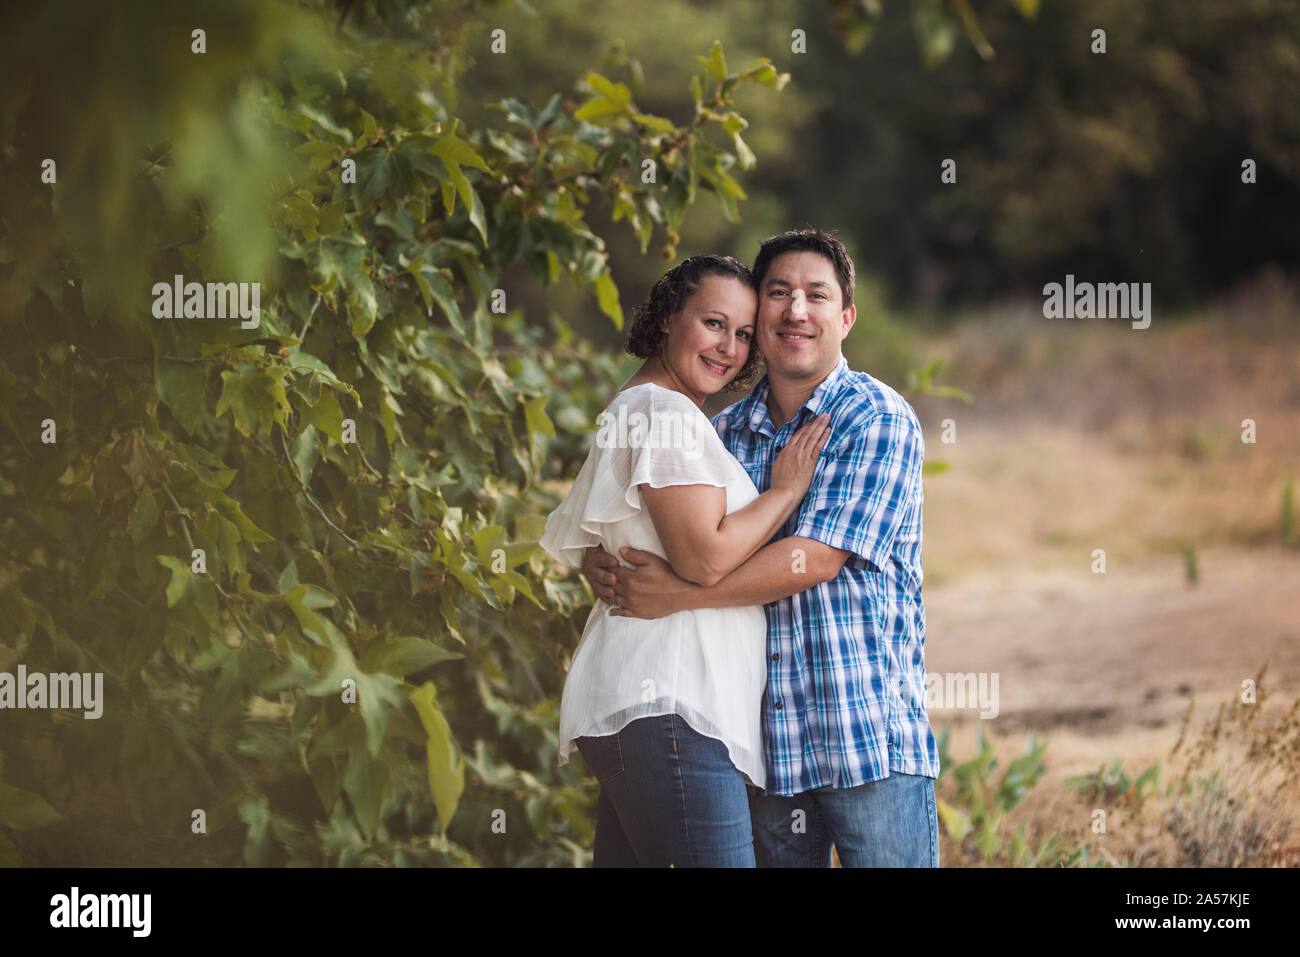 Lächelnd, Mann und Frau, die in der Wiese in der Nähe von Laub Stockfoto